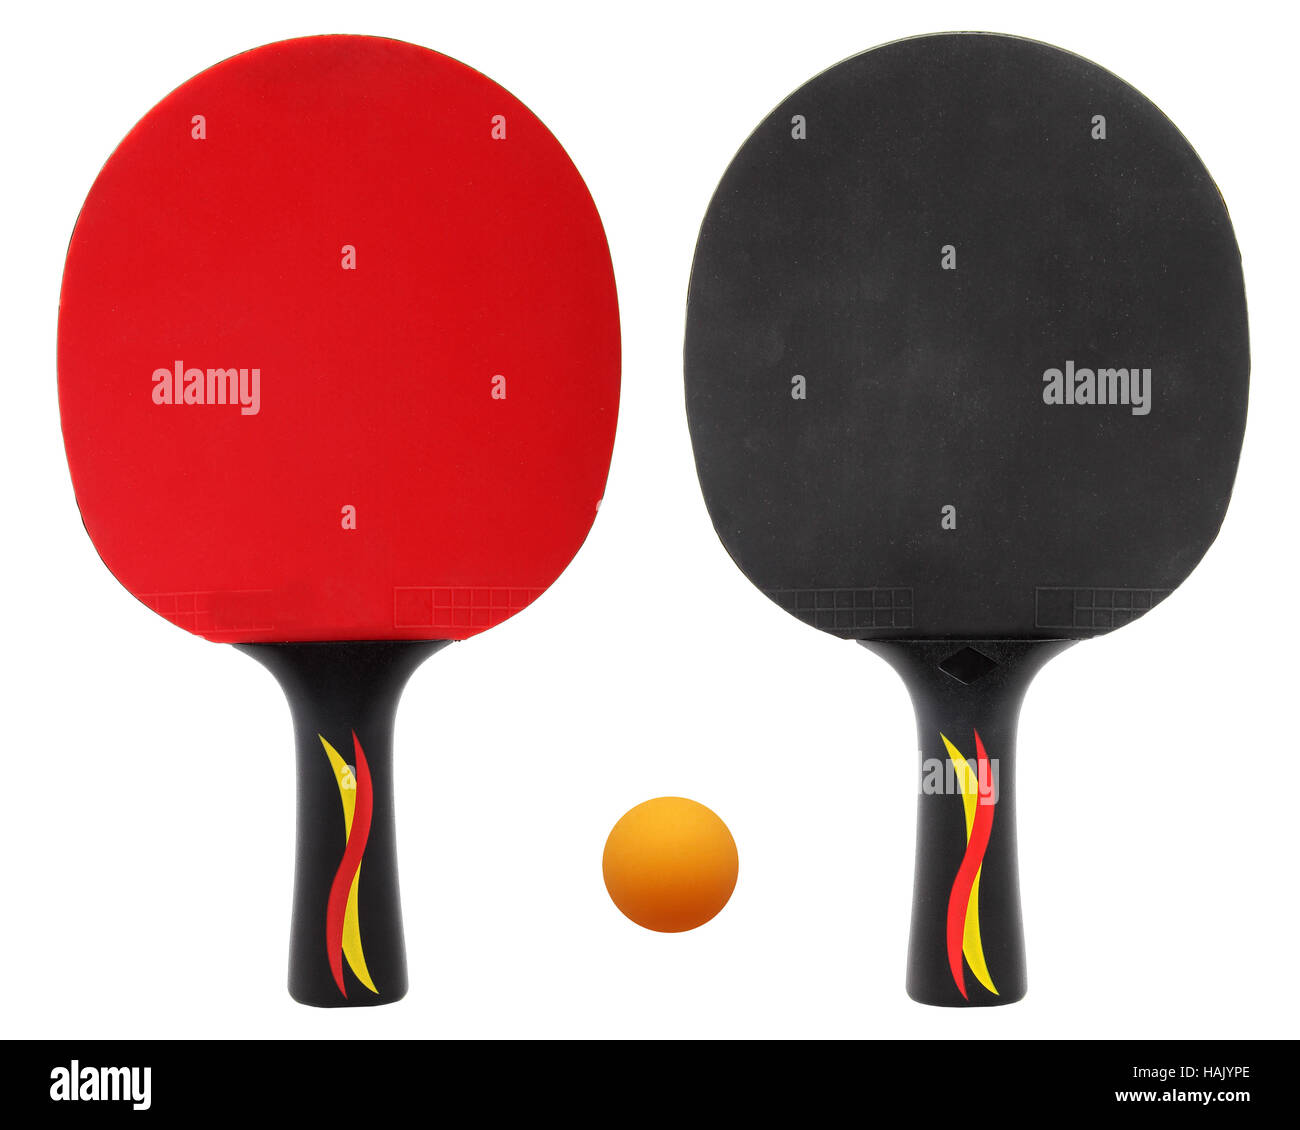 Deux tennis de table, raquettes de ping-pong isolated on white Banque D'Images